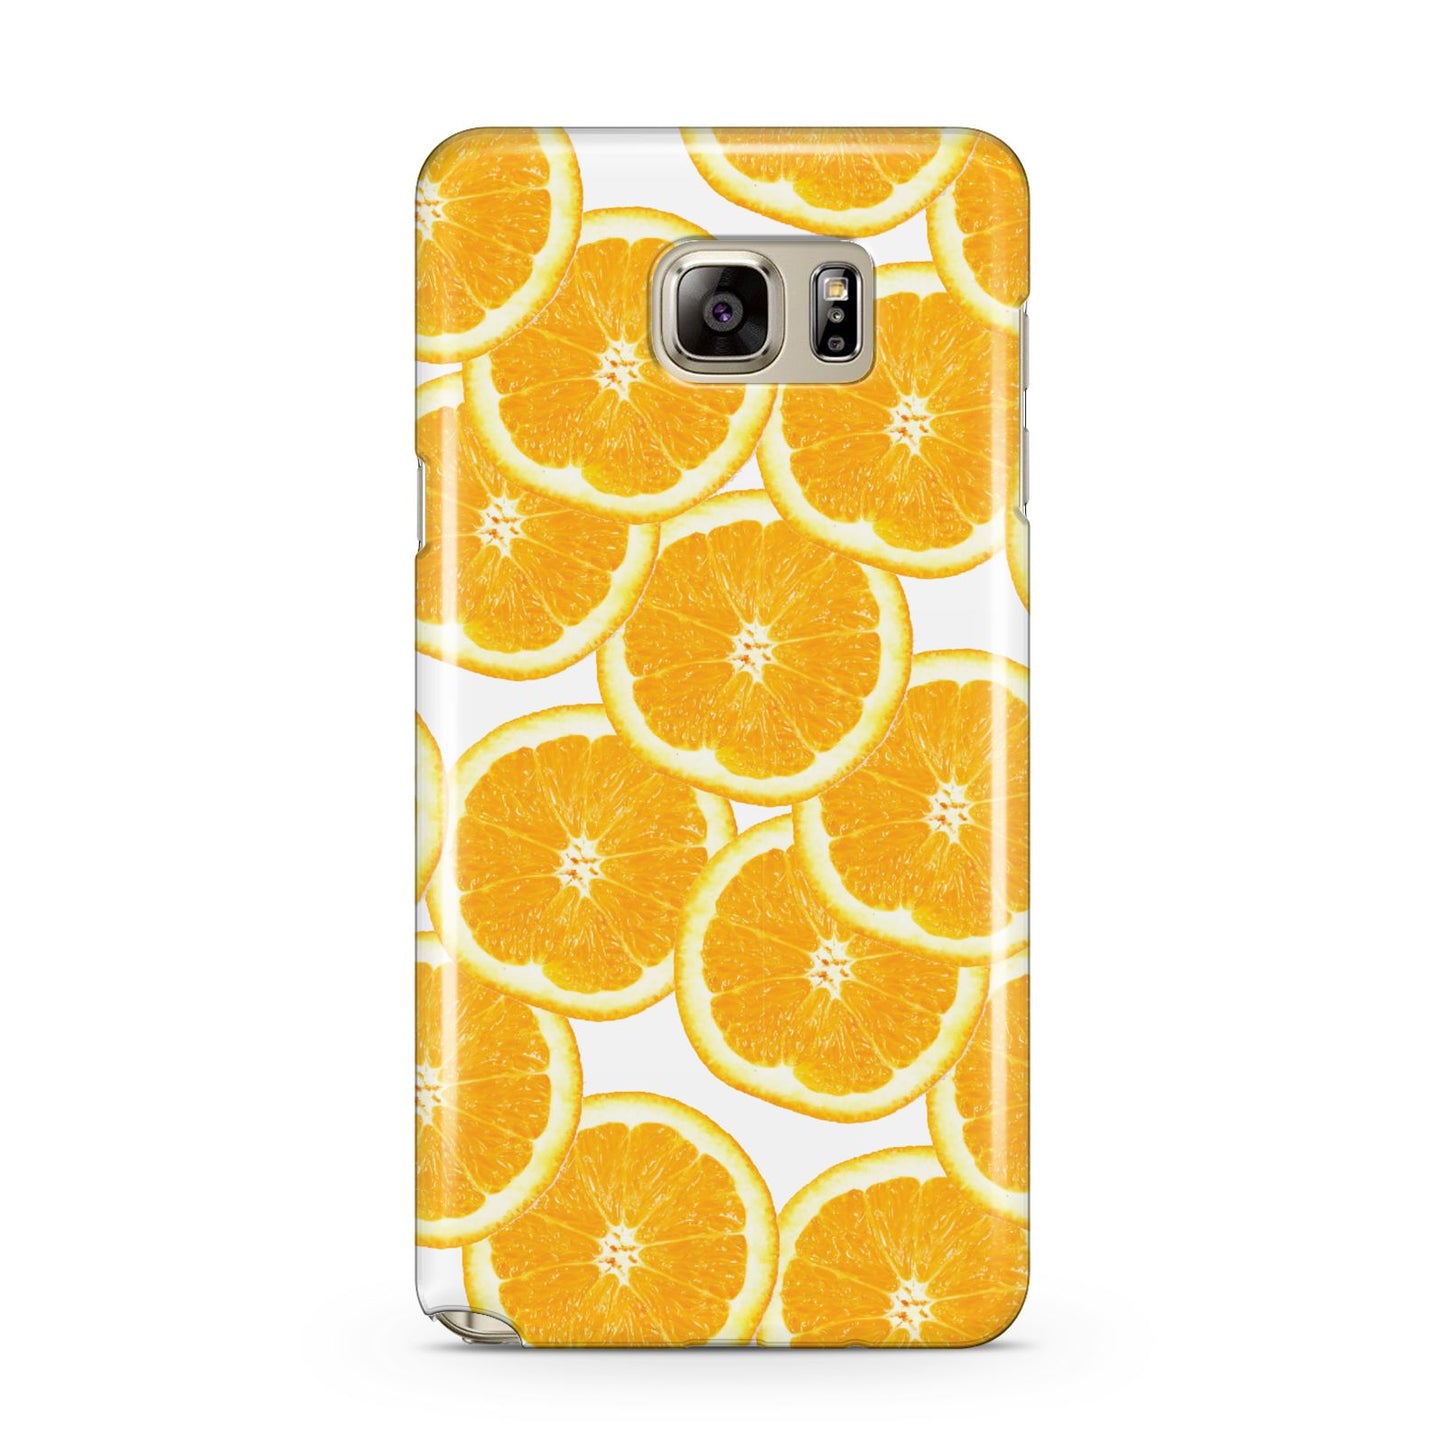 Orange Fruit Slices Samsung Galaxy Note 5 Case